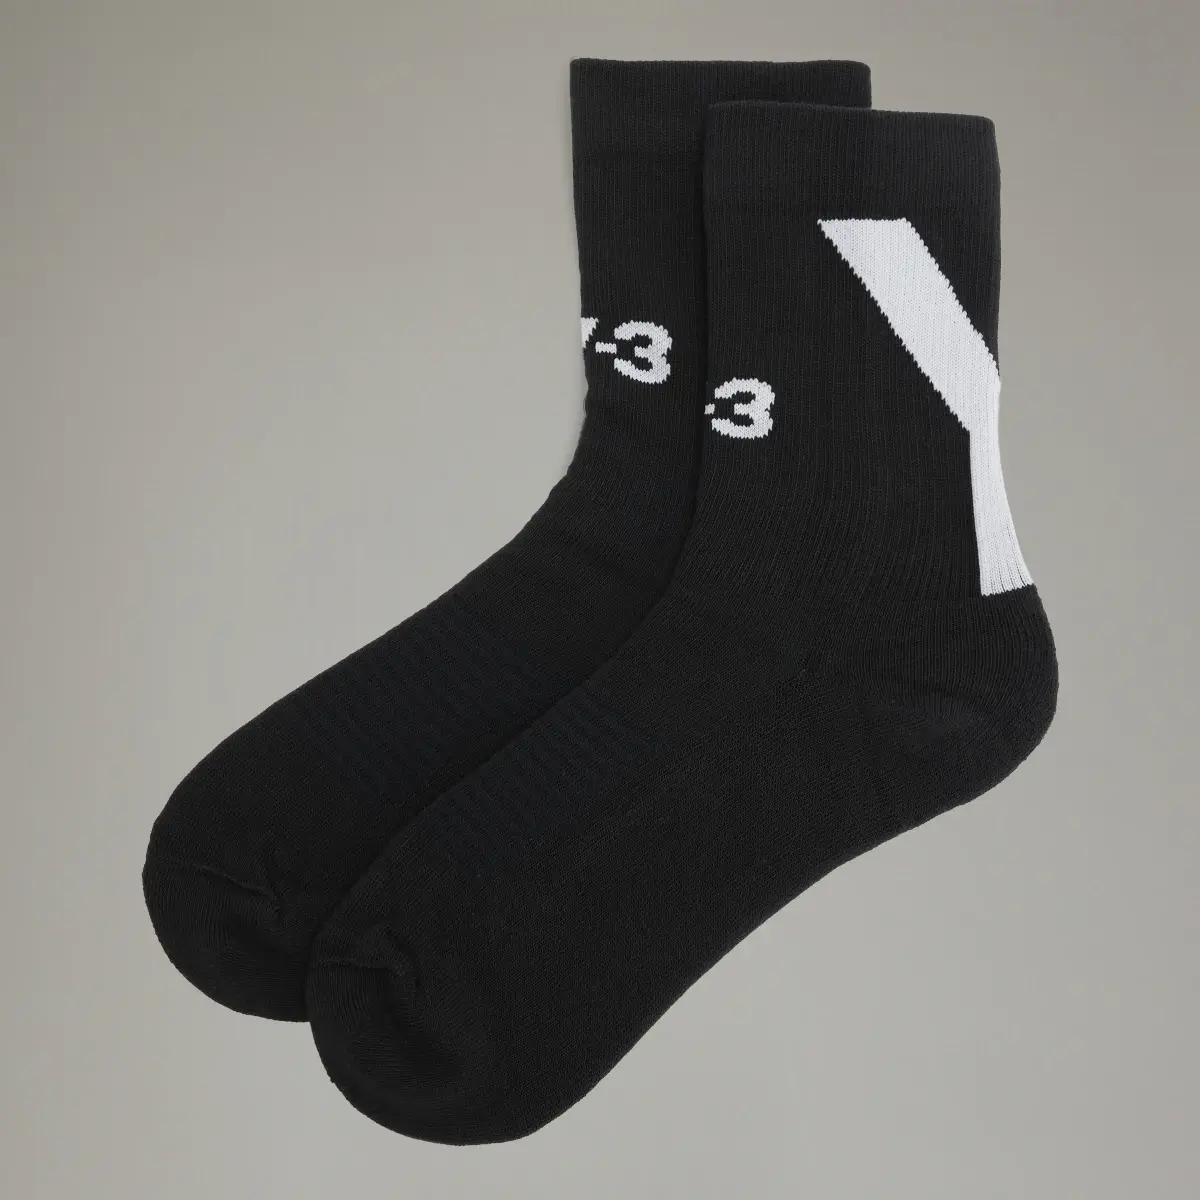 Adidas Y-3 Hi Socks. 2